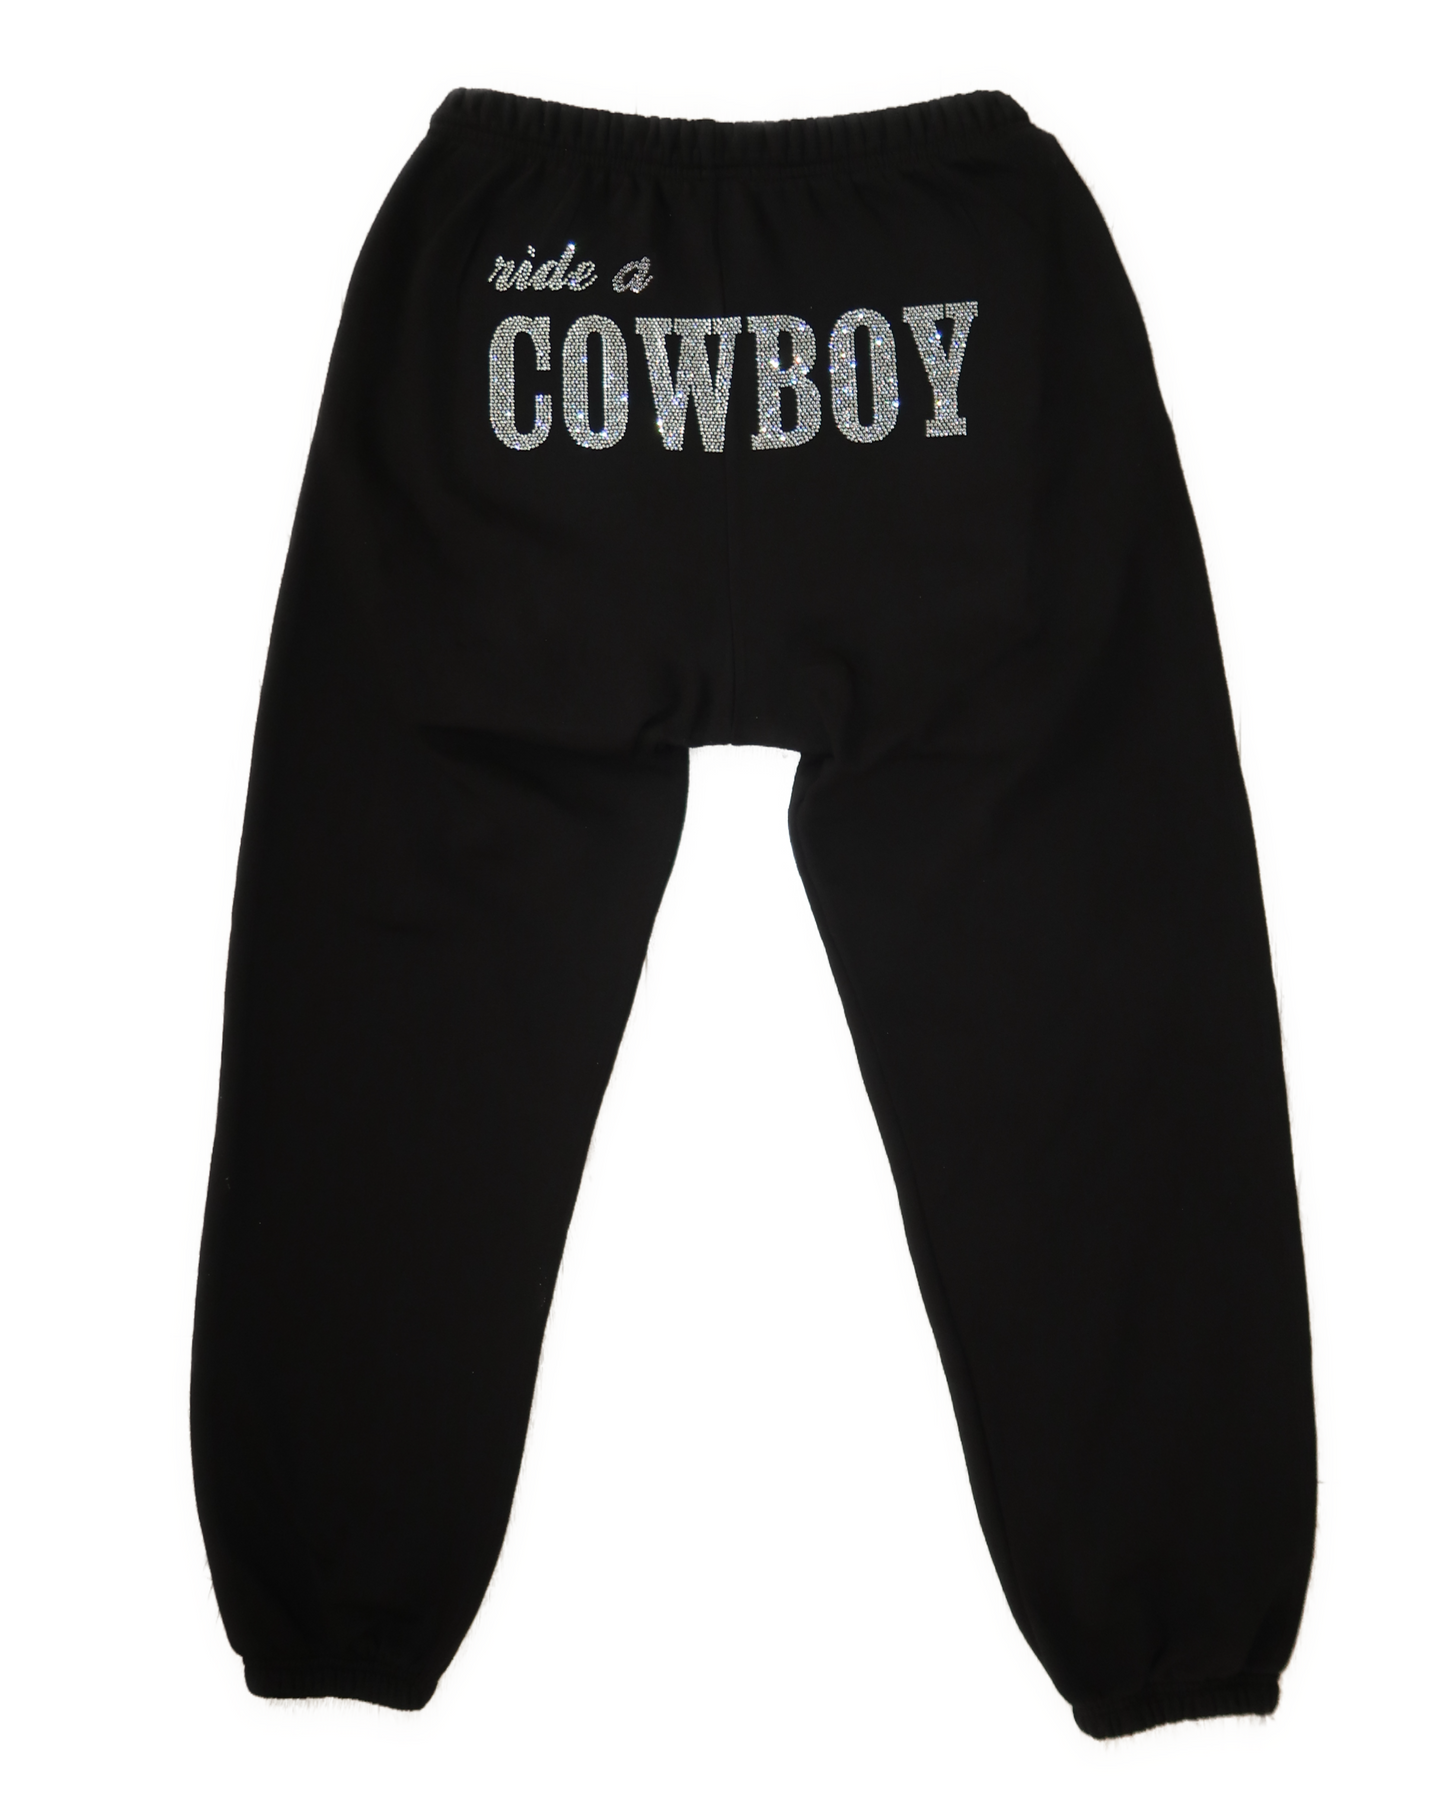 Ride a Cowboy Sweatpants